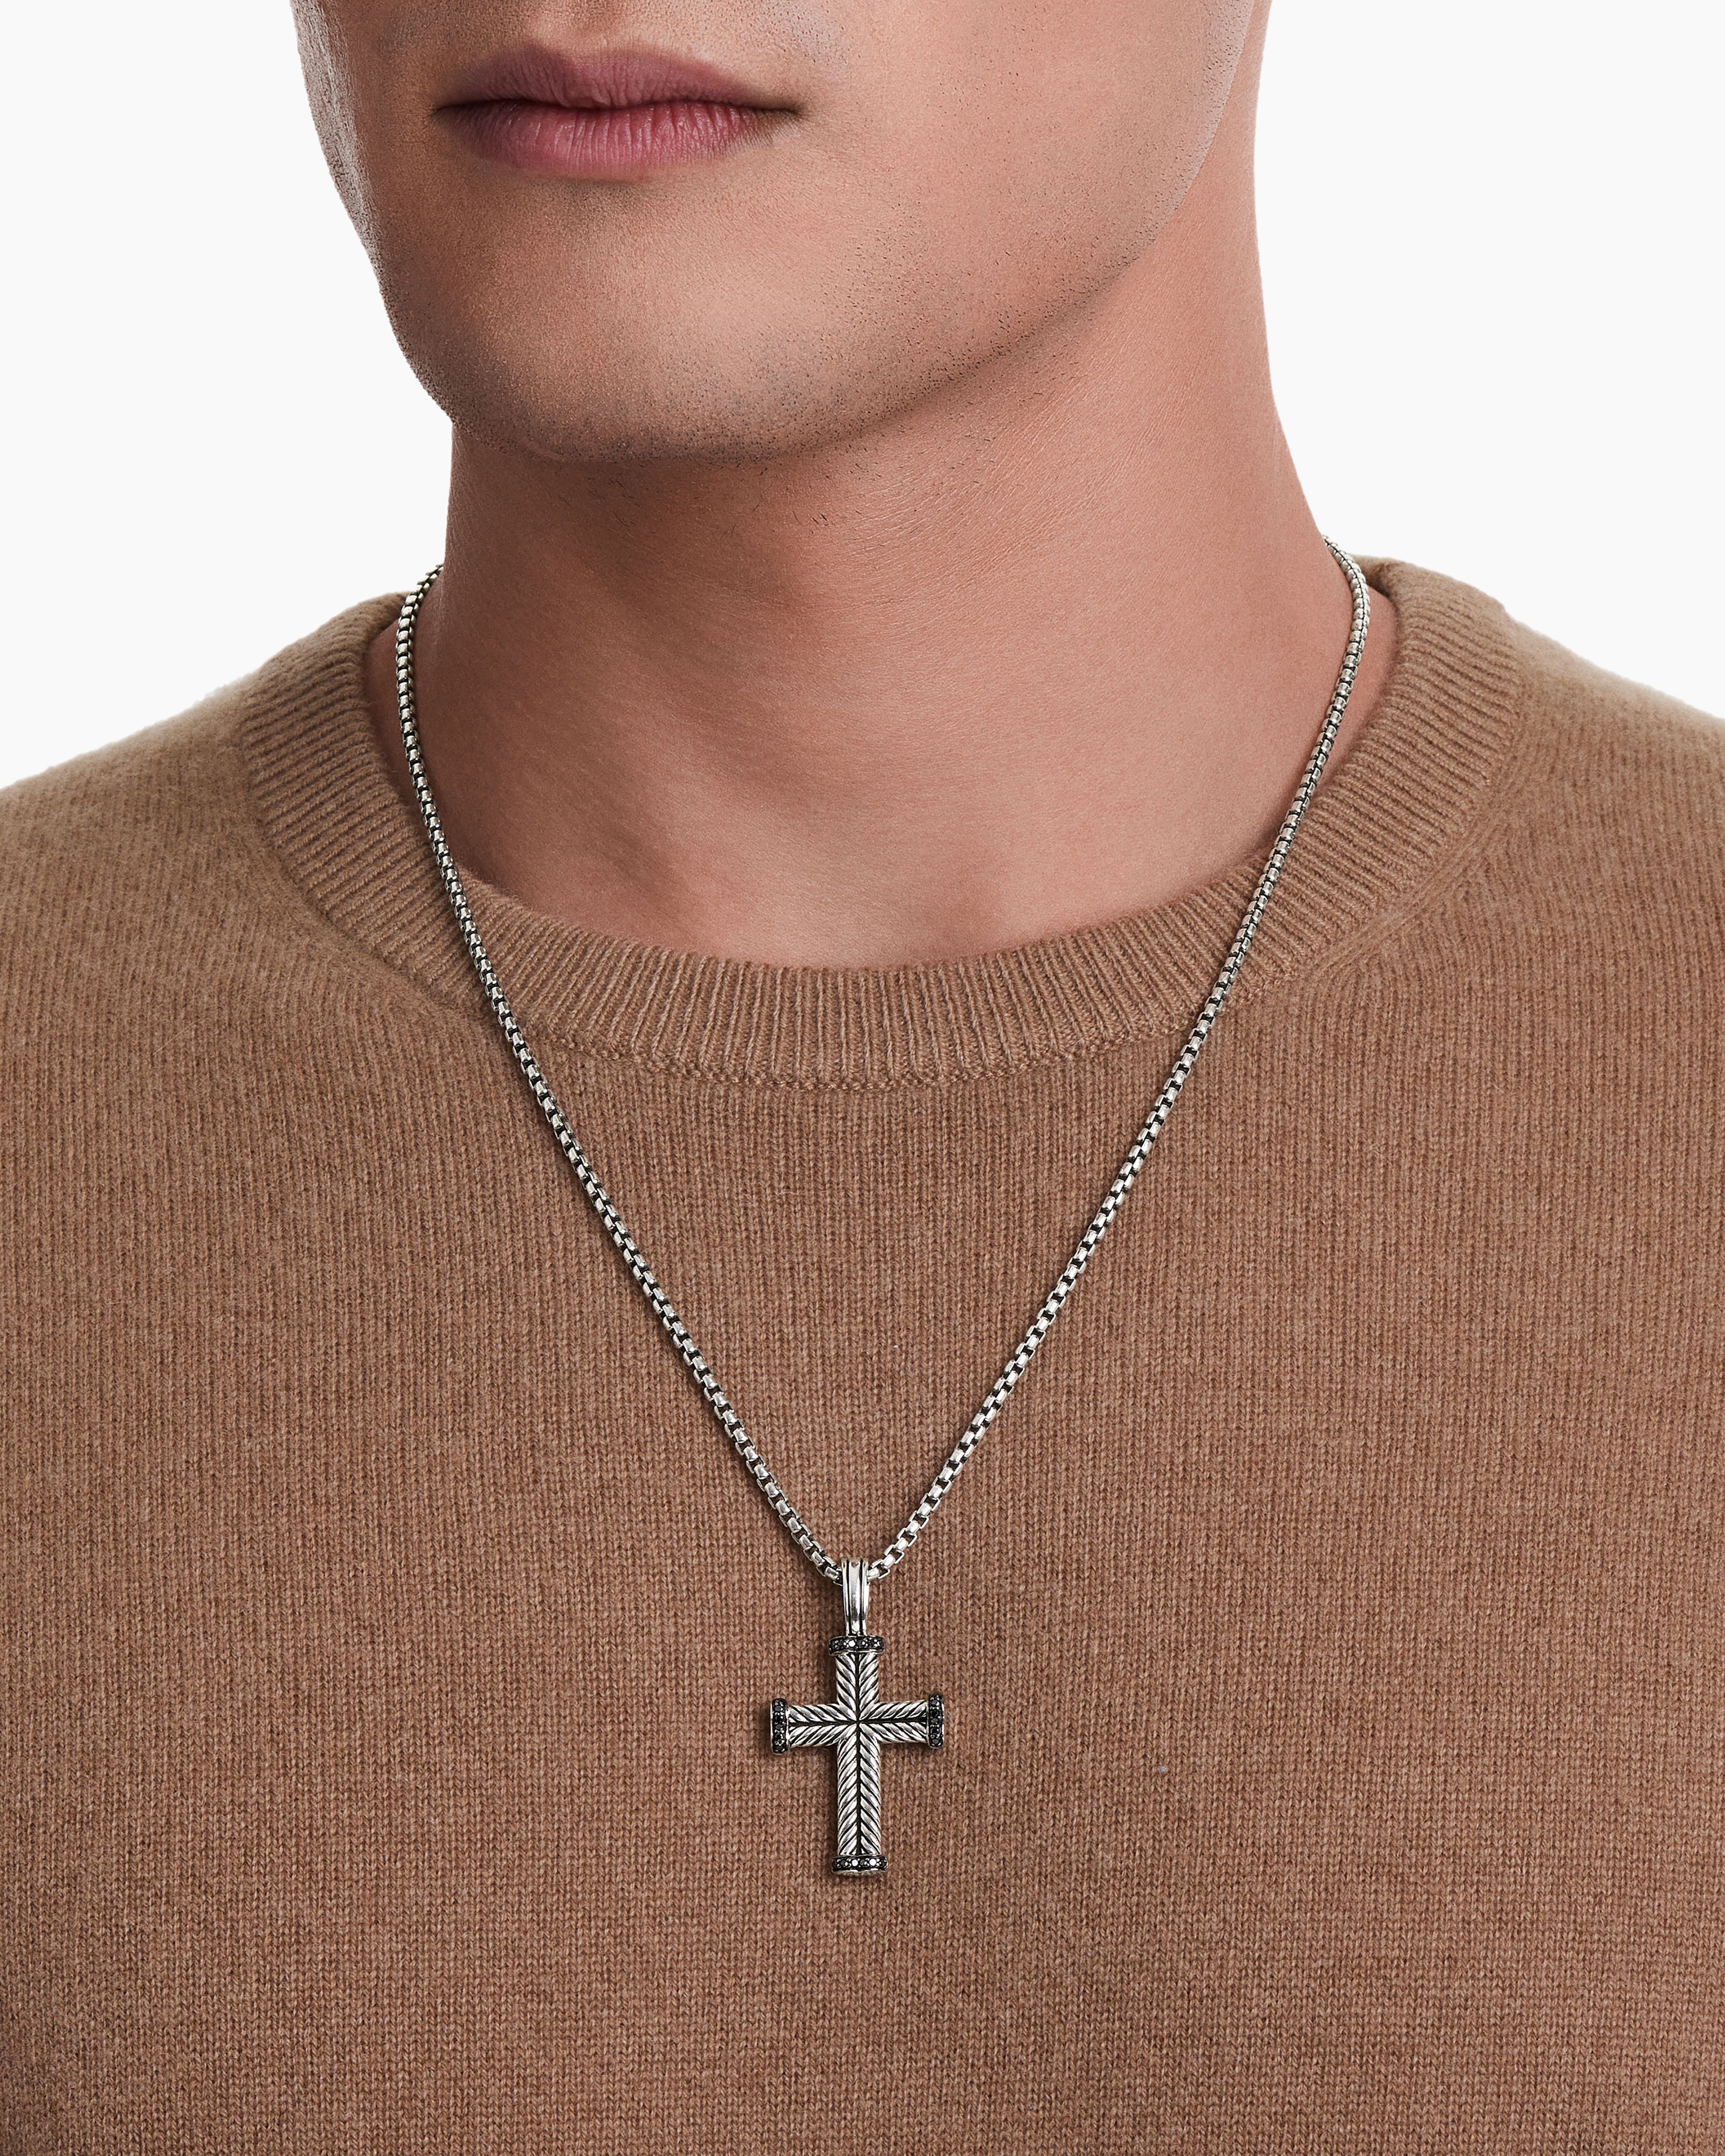 Men's Chain Pendants: Cross, Tags, & Modern Styles